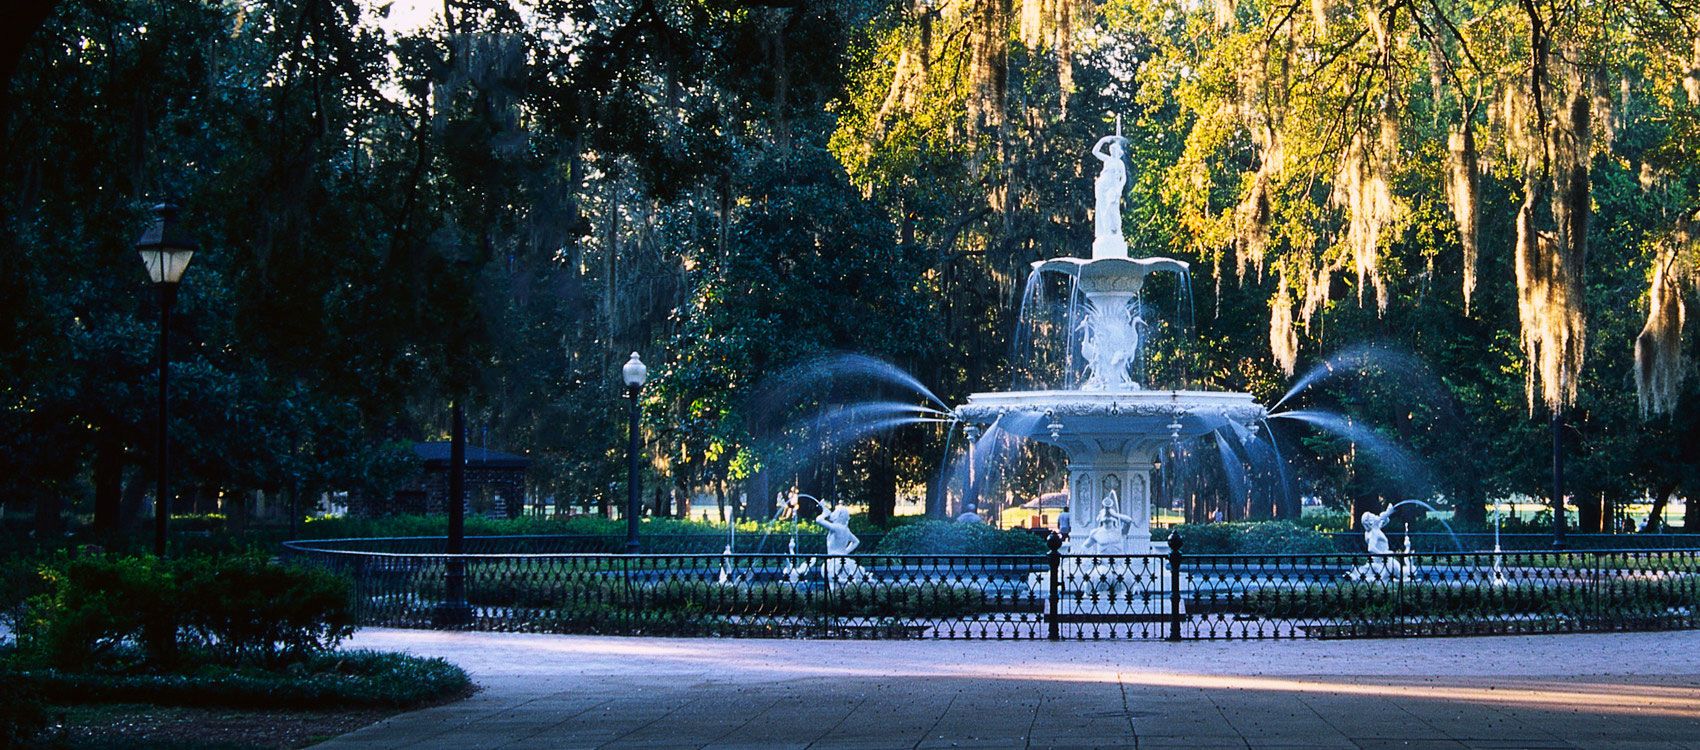 Ornate fountain in Savannah